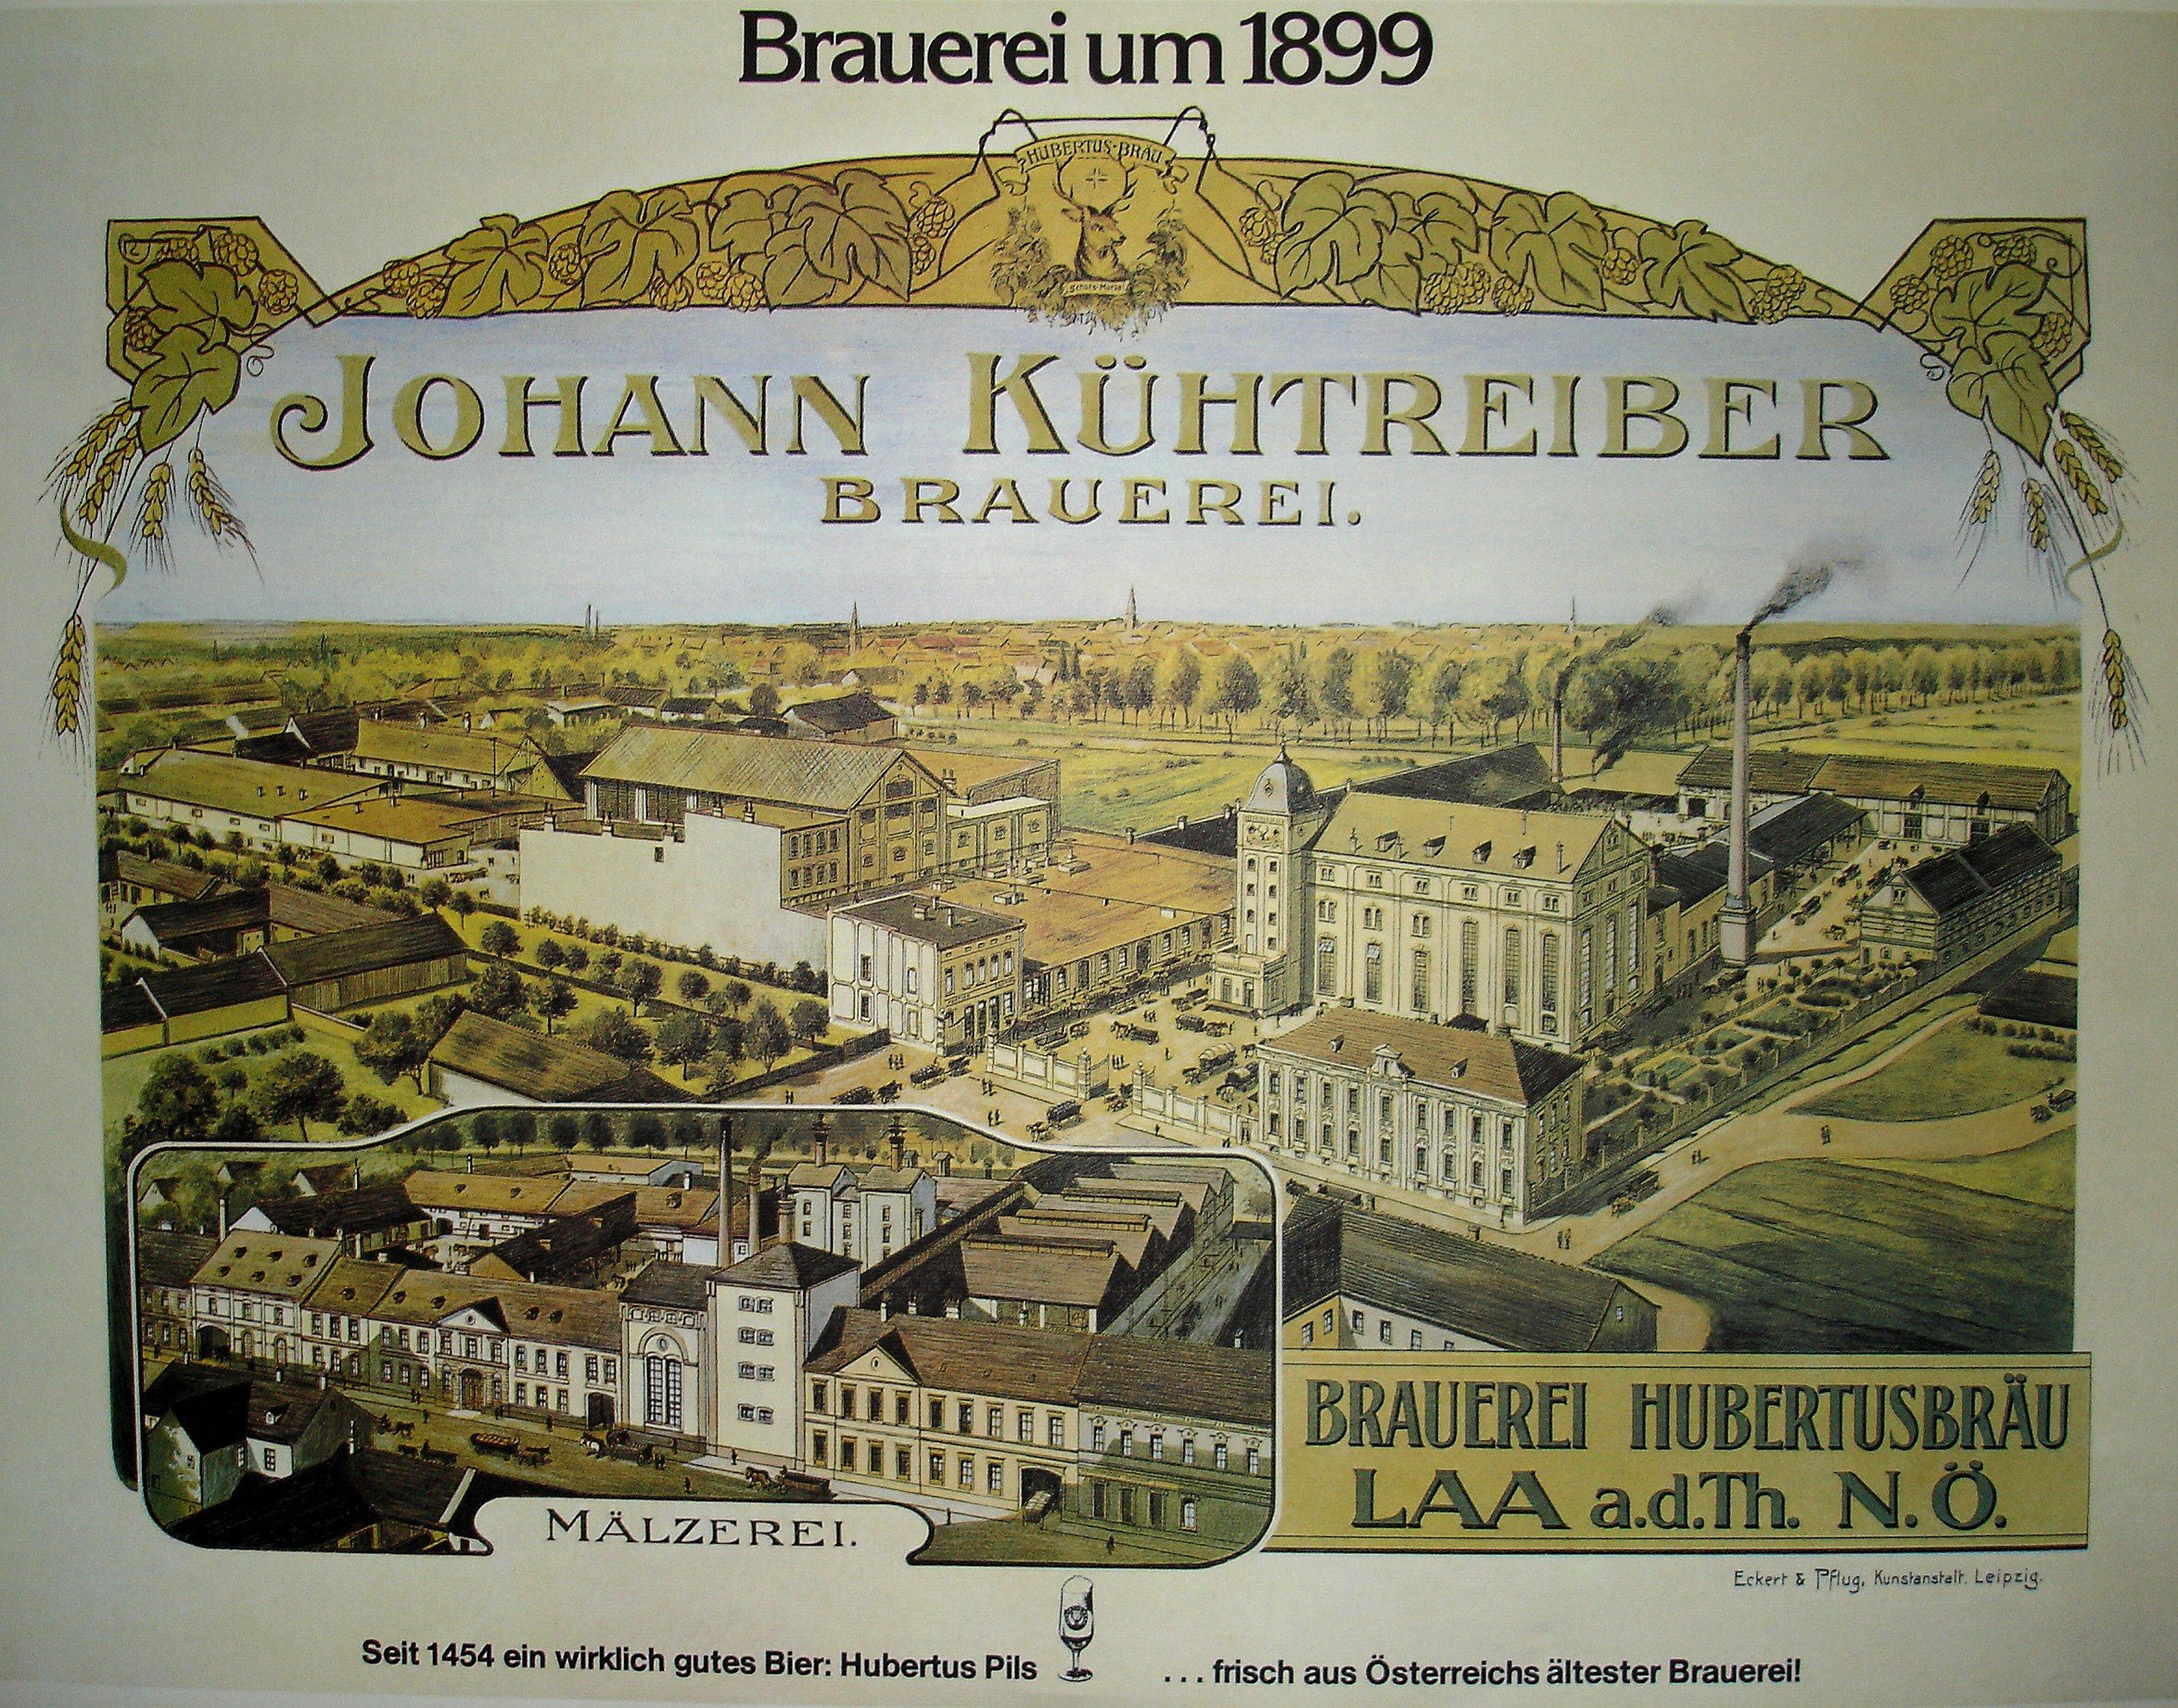 Hubertus Bräu Brauerei aus Österreich